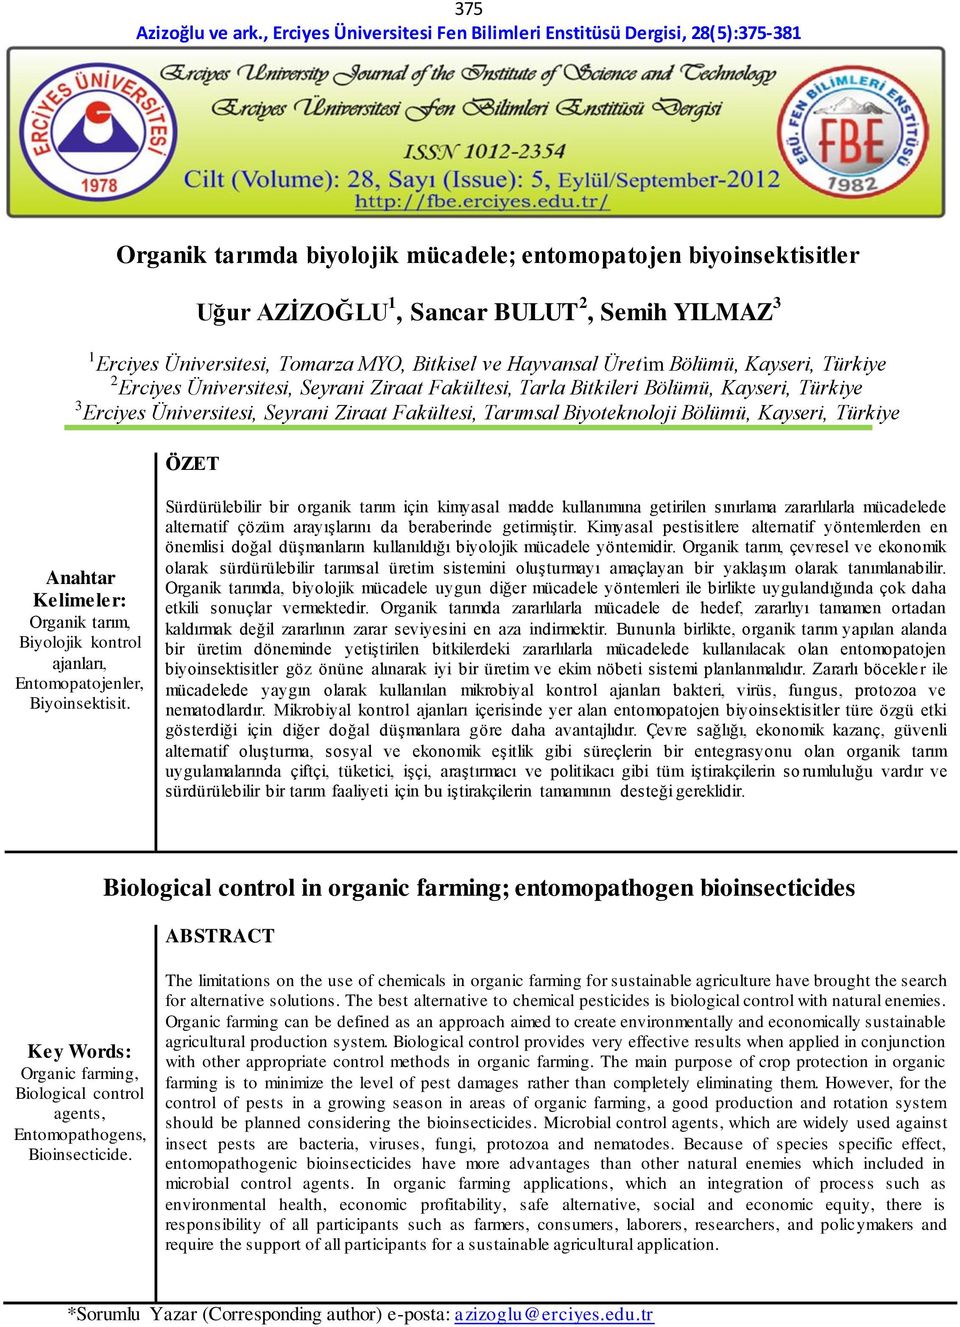 Türkiye ÖZET Anahtar Kelimeler: Organik tarım, Biyolojik kontrol ajanları, Entomopatojenler, Biyoinsektisit.